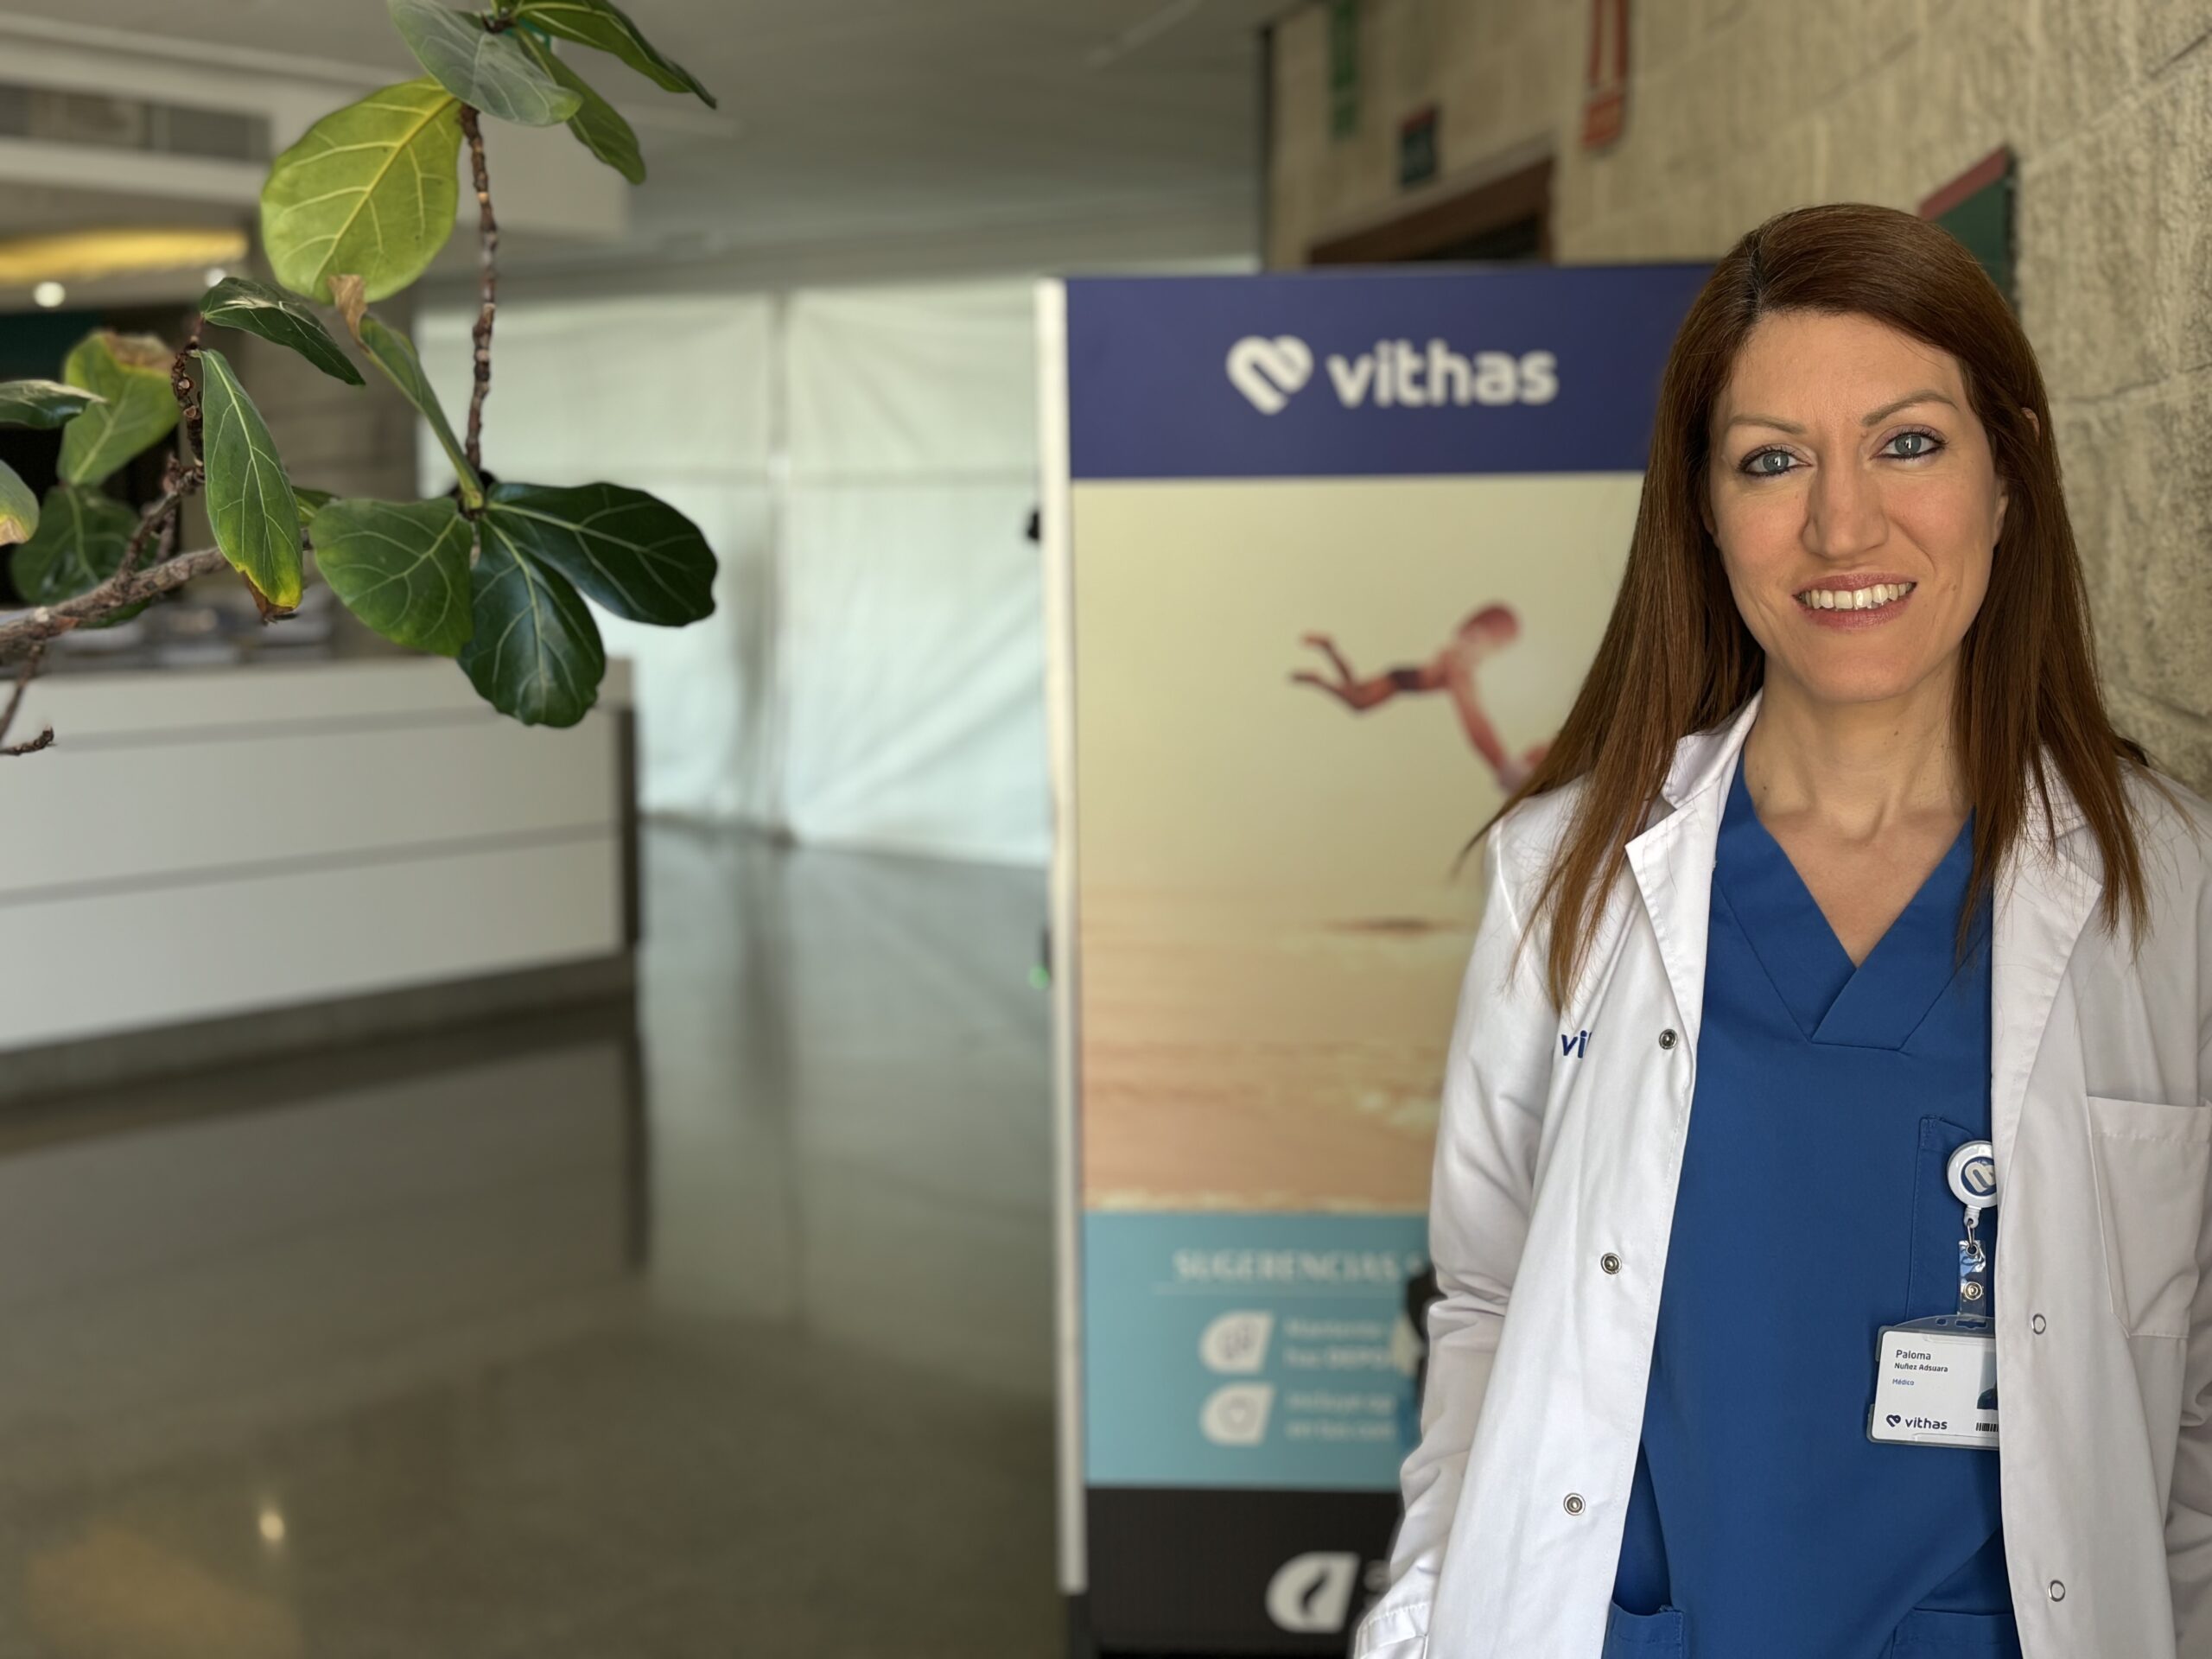 Vithas Valencia 9 de Octubre ofrece Aulas Salud gratuitas sobre alimentación infantil